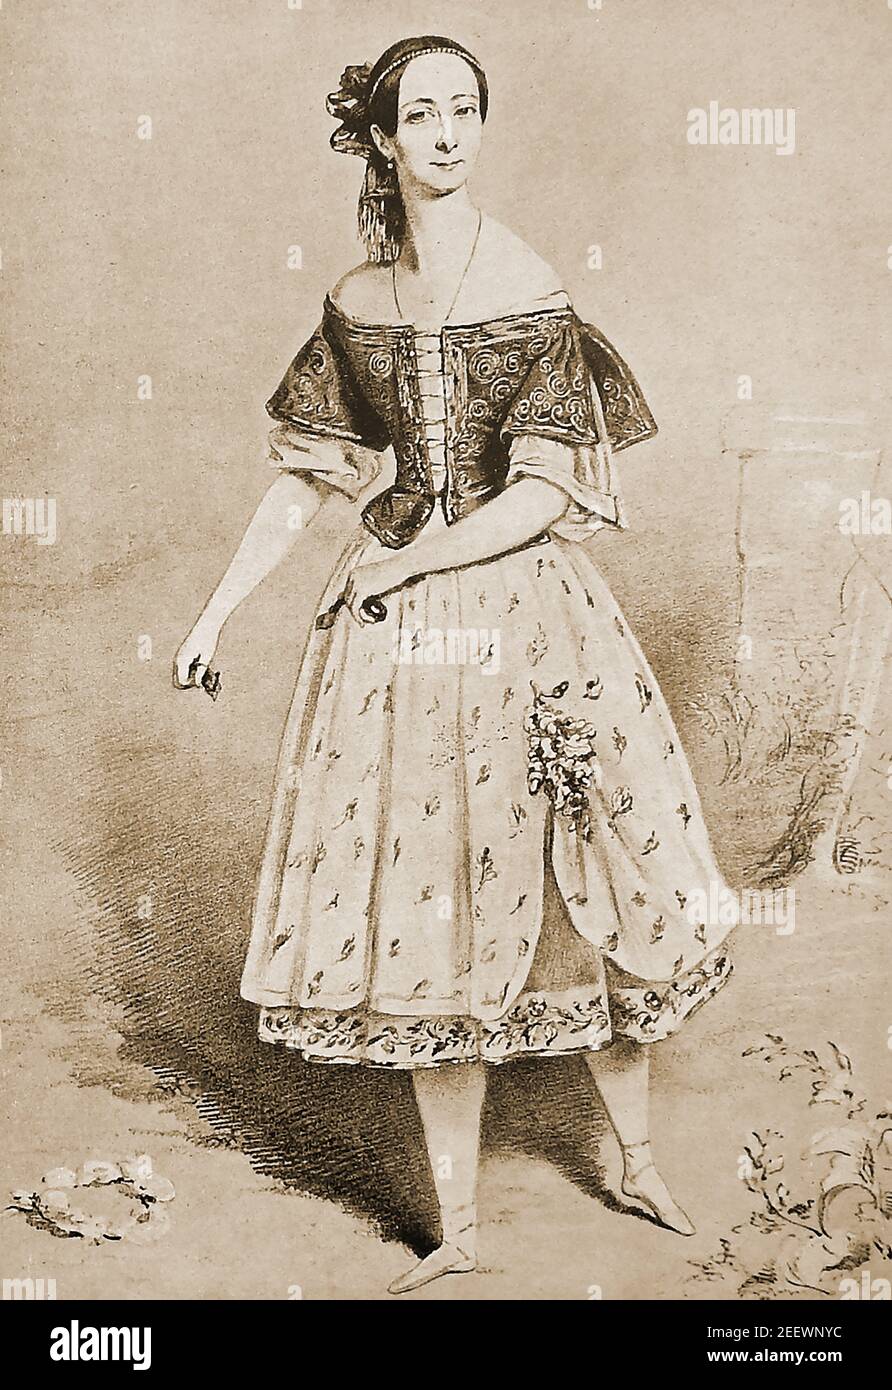 Ein Porträt von Marie Taglioni auf der Bühne in 'La Gitana' --- Marie Taglioni, Comtesse de Voisins ( 1804 – 1884) war eine italienische Balletttänzerin. Sie war eine der berühmtesten Ballerinas der romantischen Ballettepoche und spielte am her Majesty's Theatre, London und der Théâtre de l'Académie Royale de Musique (Paris Opera Ballet.) Einige Kredit ihr als die erste Ballerina wirklich tanzen en pointe. Stockfoto